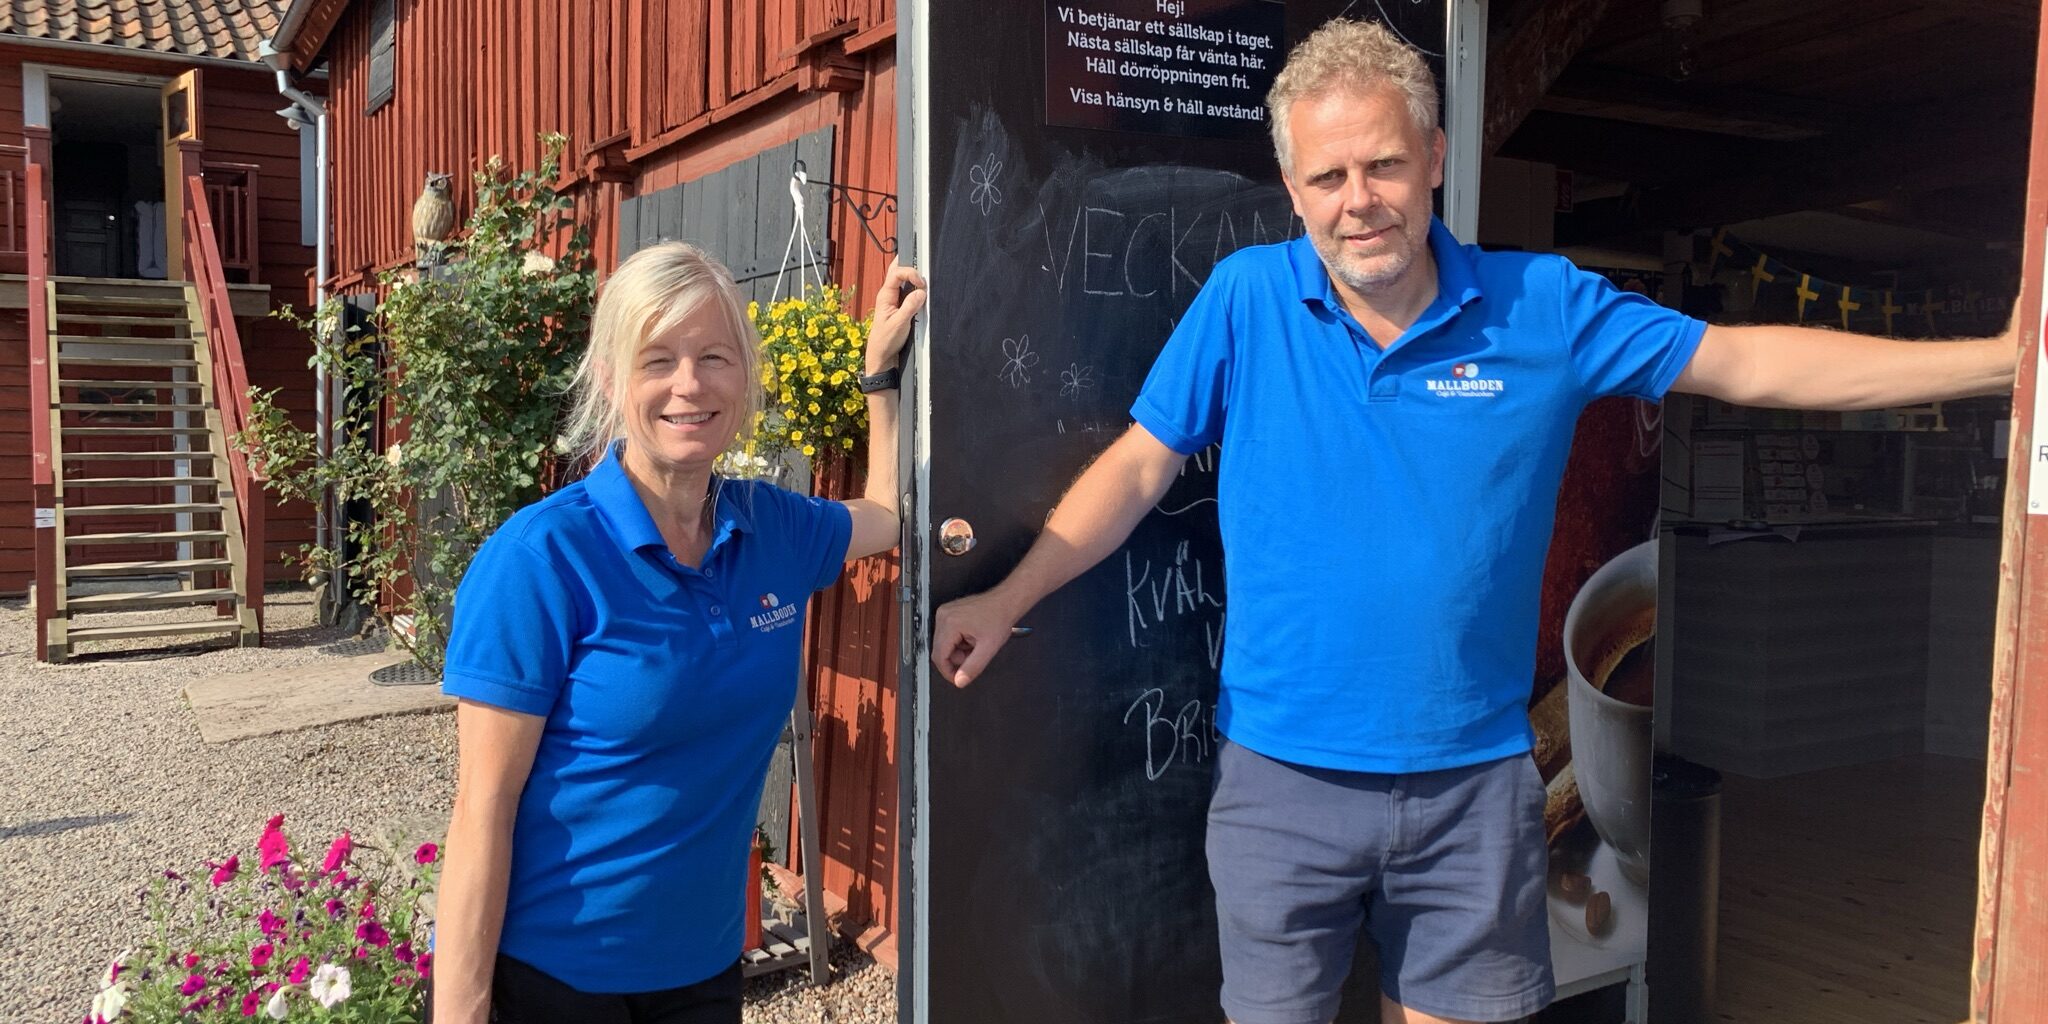 Ann Lövgren och Thomas Isacsson är ägare av Mallbodens Café och våfflor. De står i sina blå pikettröjor intill entrédörren till cafeet.